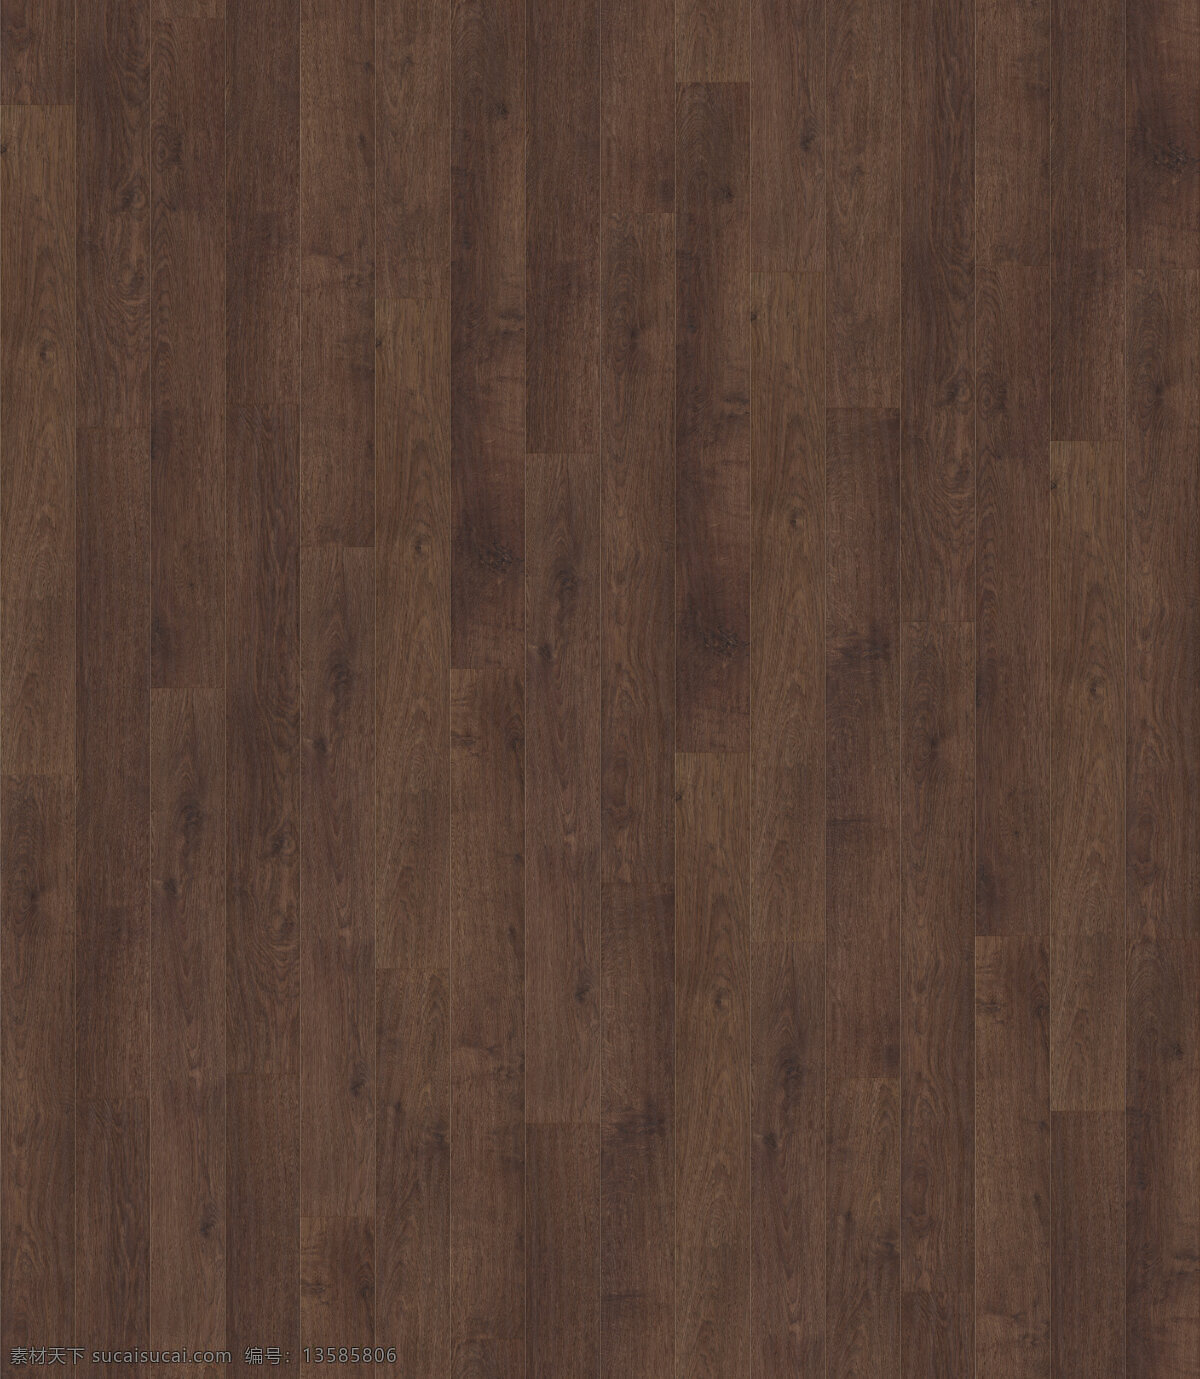 常用 胡桃 实木 木地板 贴图 地板素材 地板贴图 木材质 石材 木纹 胡桃木贴图 室内家装 材料木 家私家具网 中国设计师网 饰面木